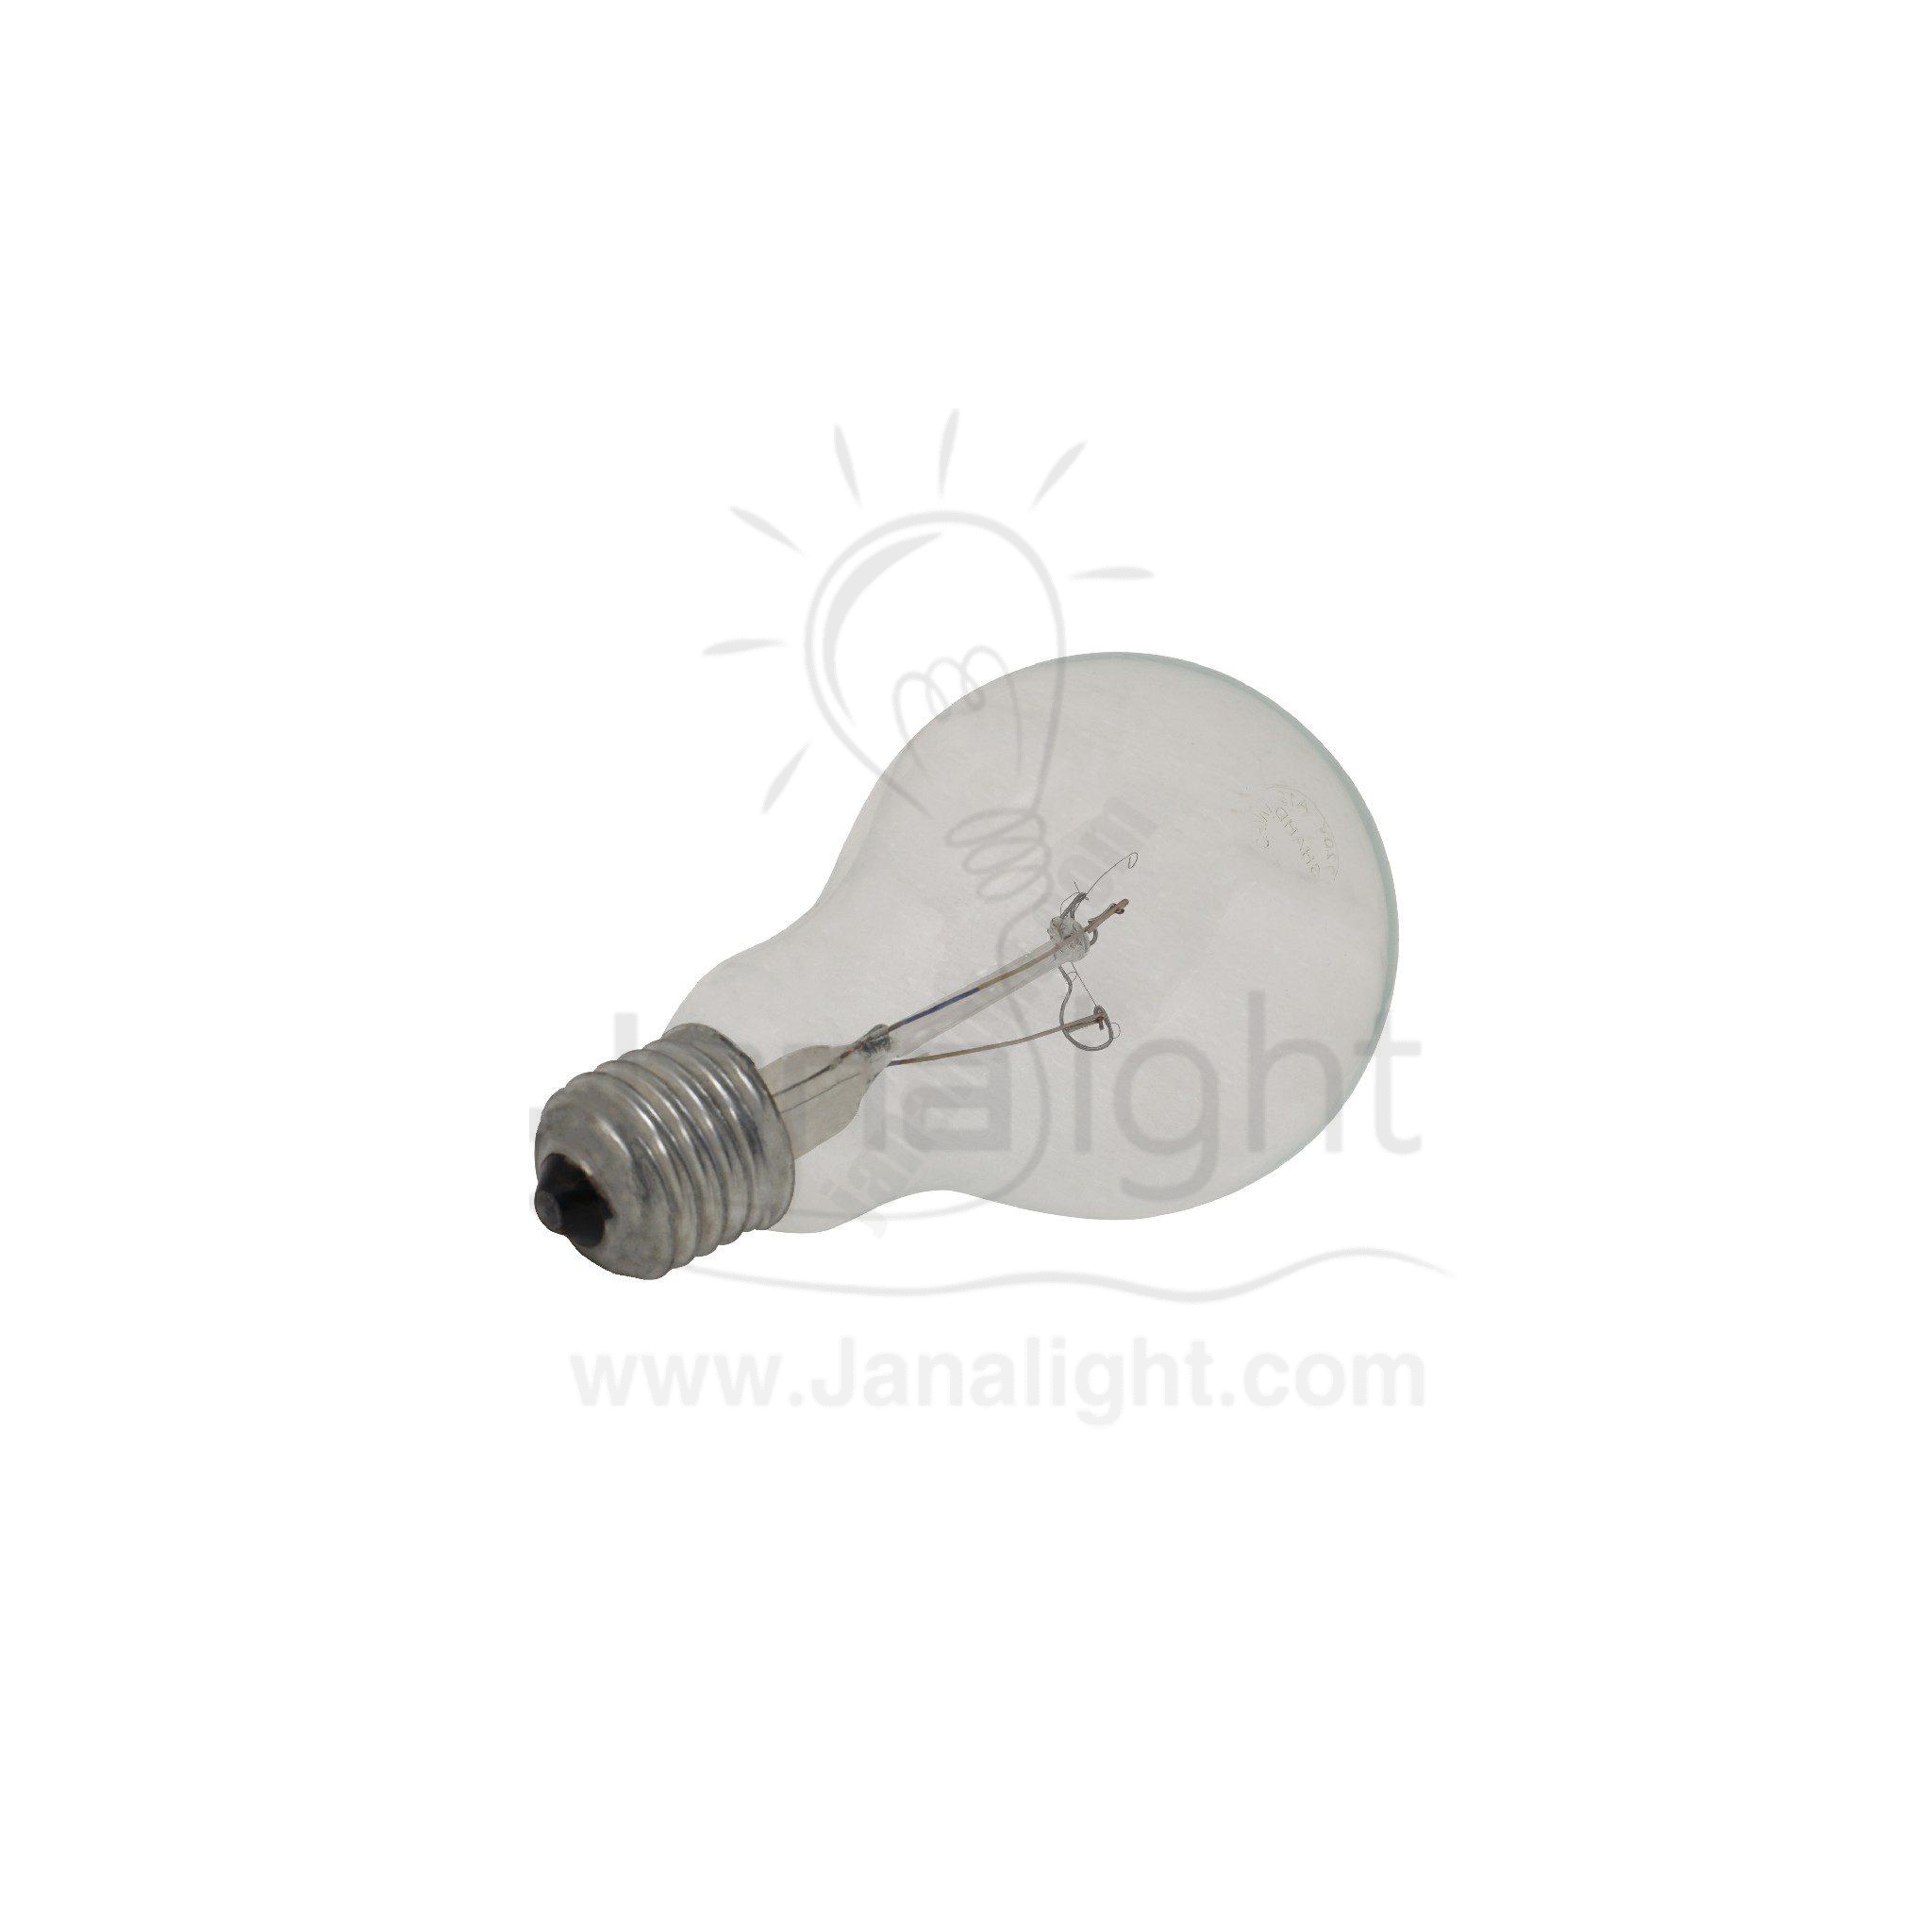 لمبة 200 وات شفاف هالوجين Nyaza Electric bulb 200 watt